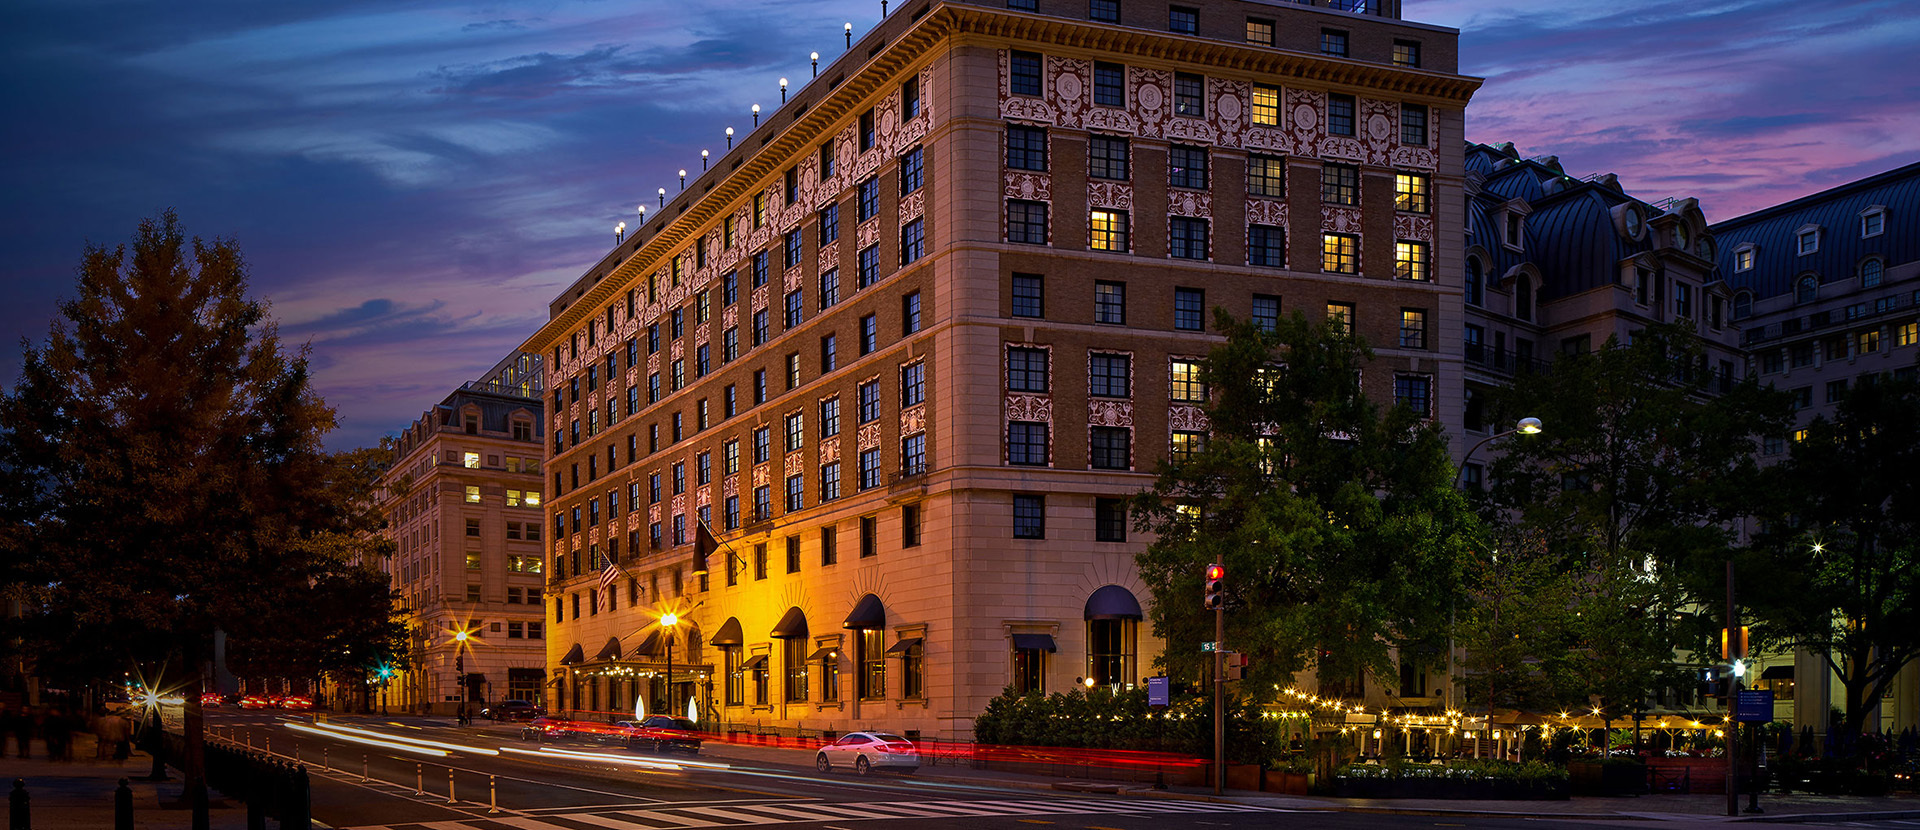 Photo of Hotel Washington, Washington, DC